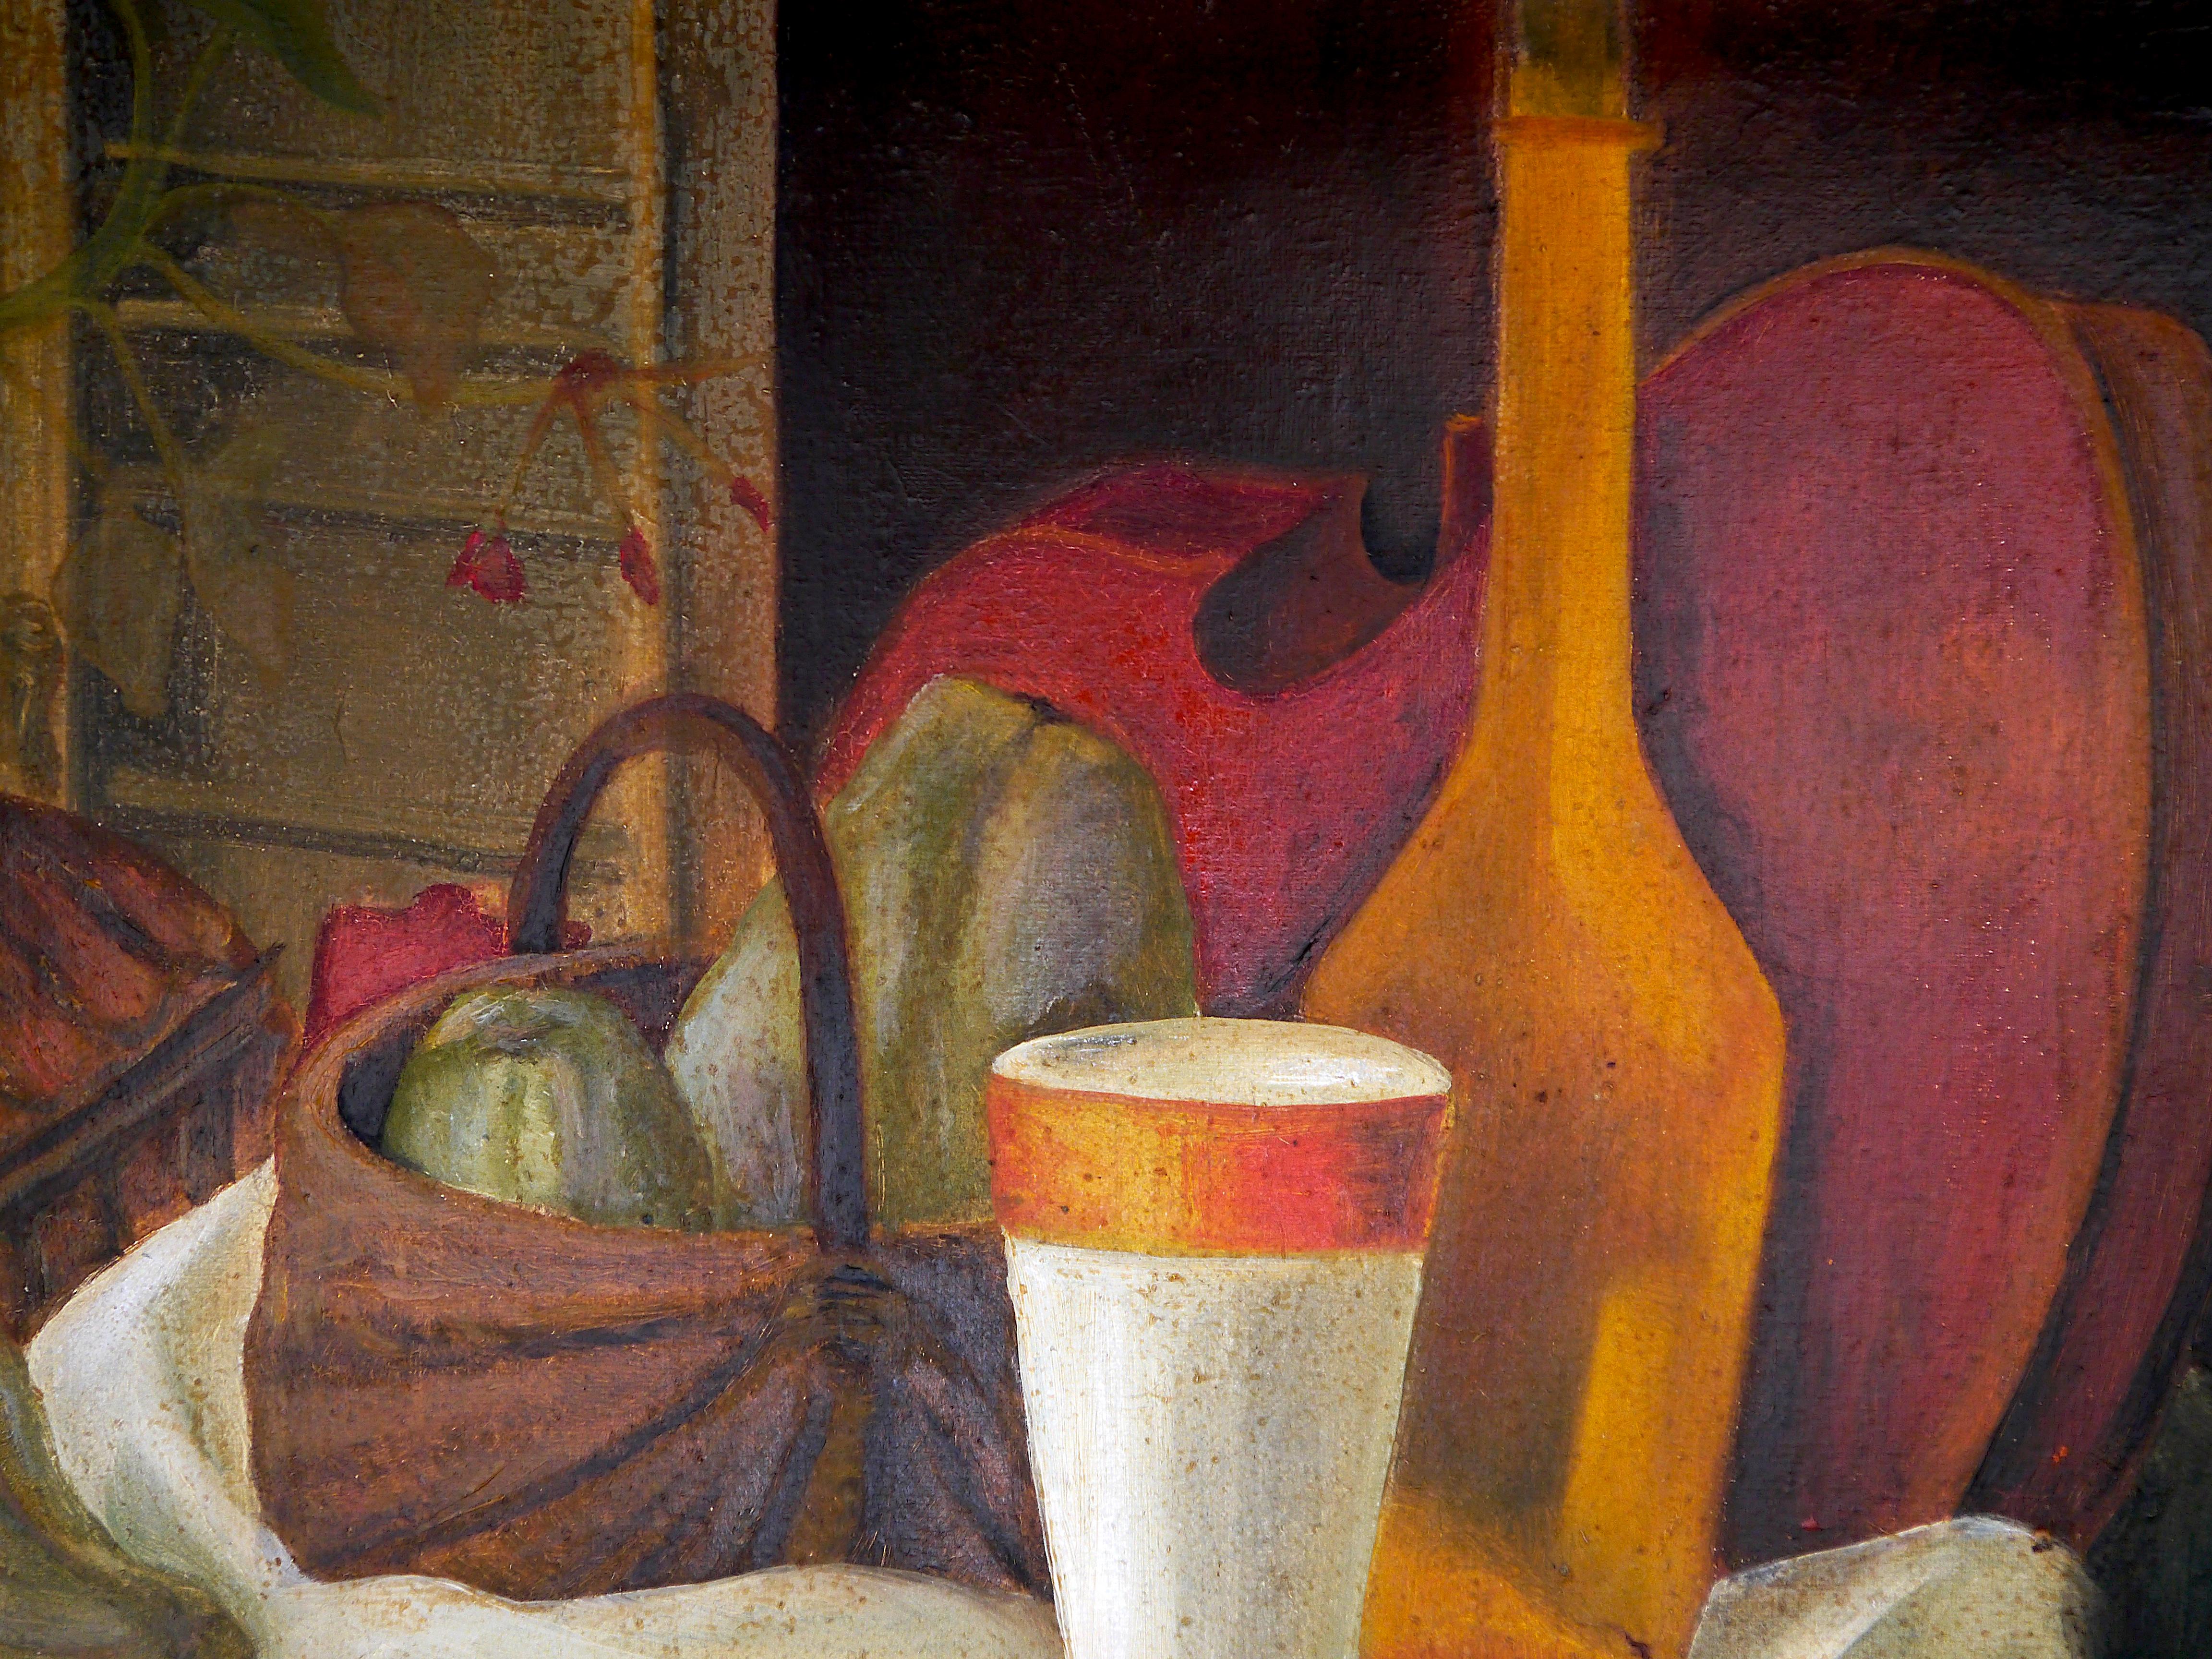 Stillleben Komposition

Strukturelle Analyse :
Es handelt sich um ein impressionistisches Stilleben, eine Komposition mit Glas im Vordergrund, dahinter ein Blumentopf, ein Korb mit Gemüse, eine Flasche, eine Geige und schließlich eine Tischdecke. Im